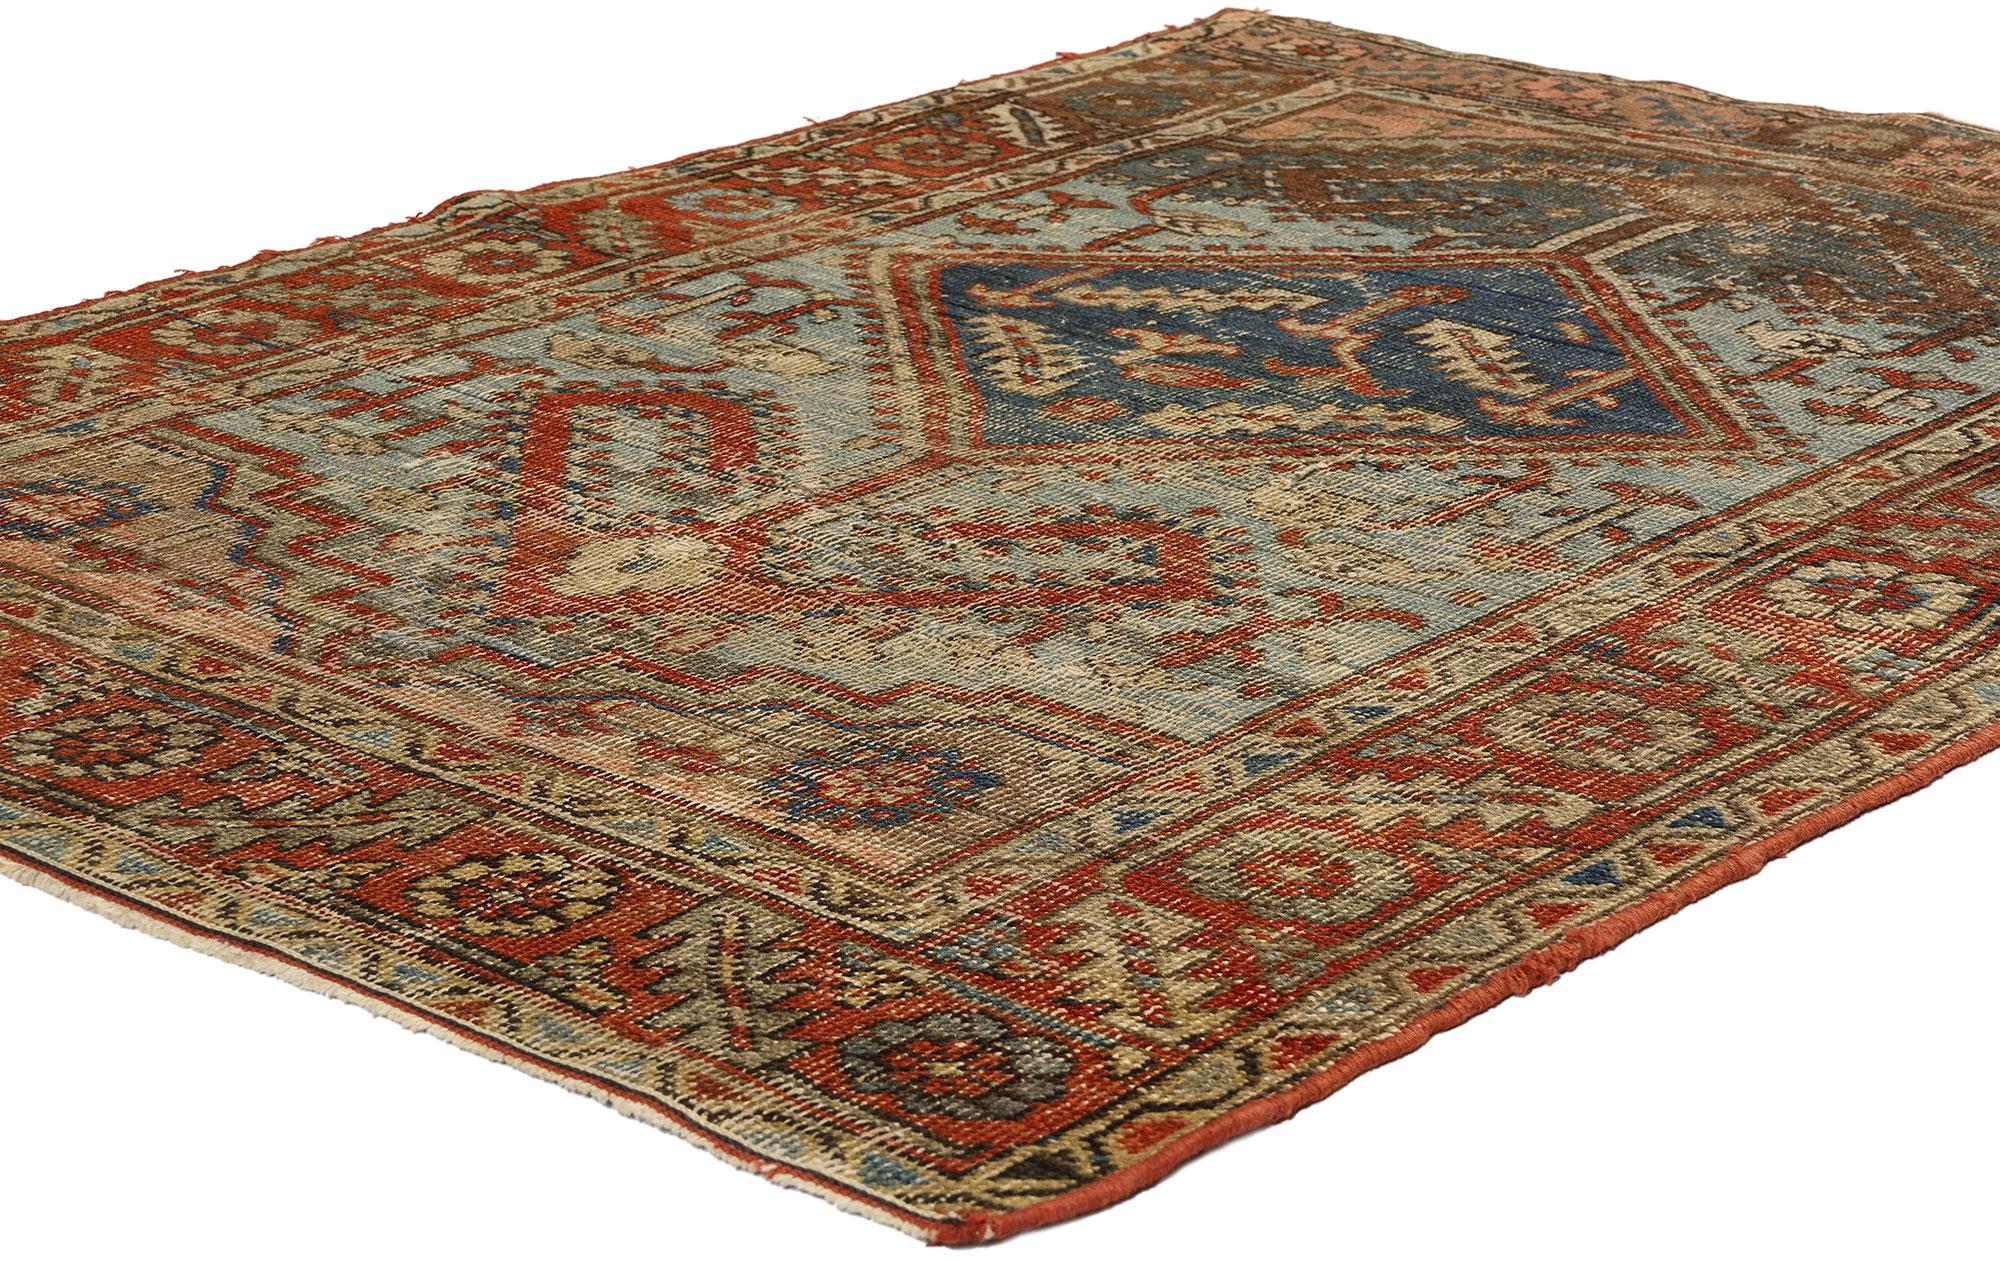 78672 Antik-getragener persischer Bakshaish-Teppich, 03'07 x 05'01. Die persischen Bakshaish-Teppiche aus dem Dorf Bakshaish im Nordwesten des Iran sind für ihre kühnen geometrischen Muster, ihre leuchtenden erdigen Farben und ihre außergewöhnliche